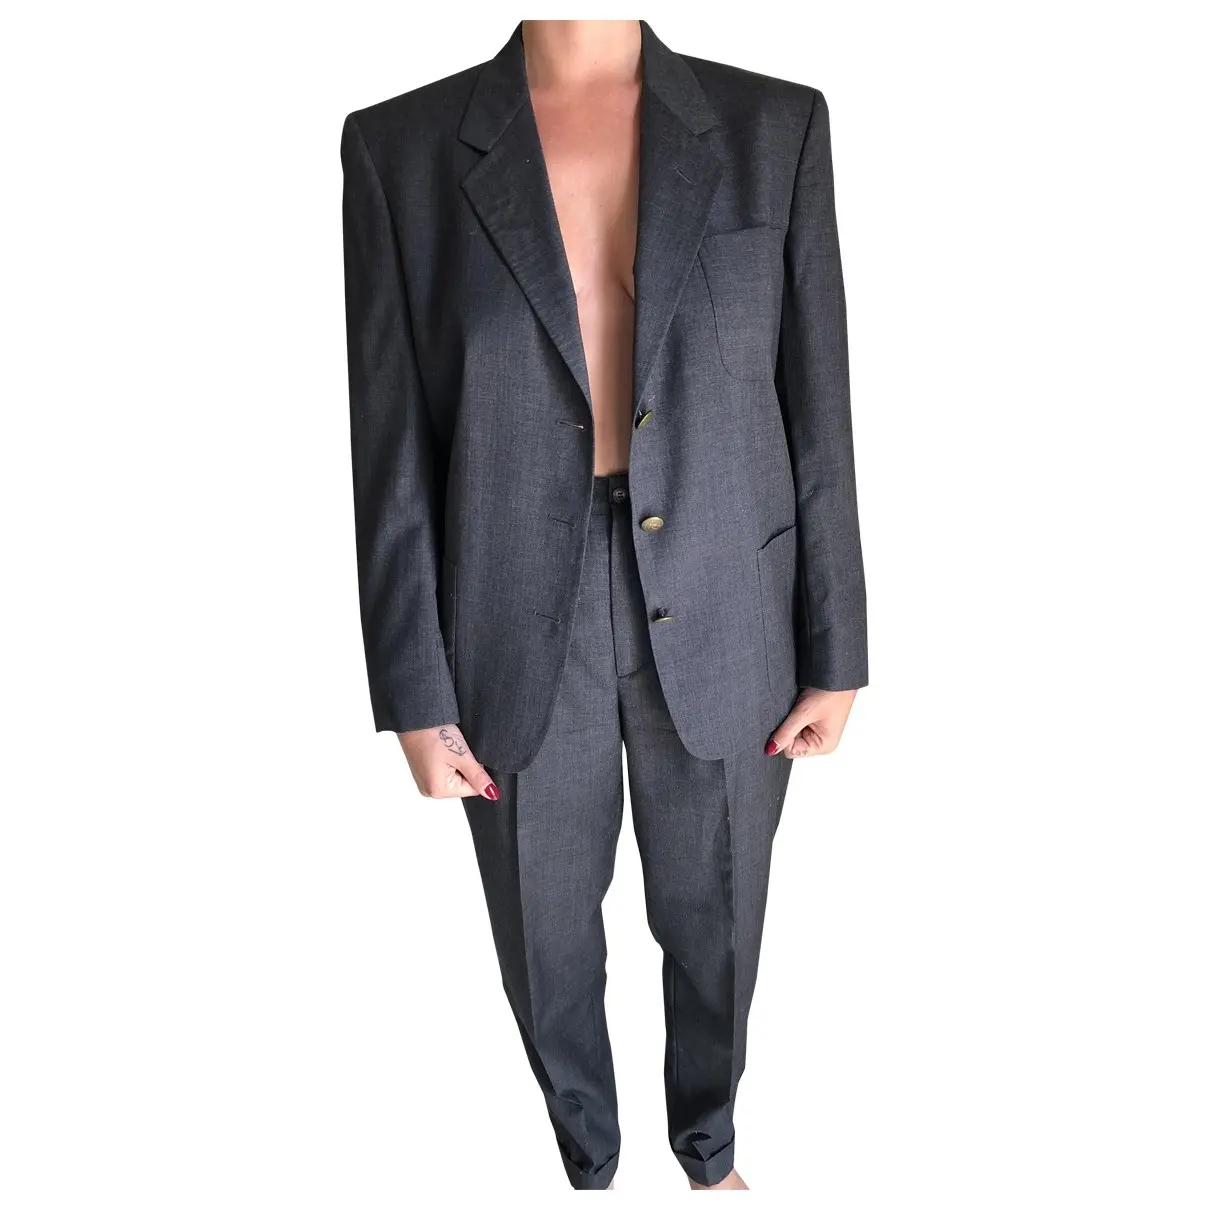 Brooksfield Suit jacket for sale